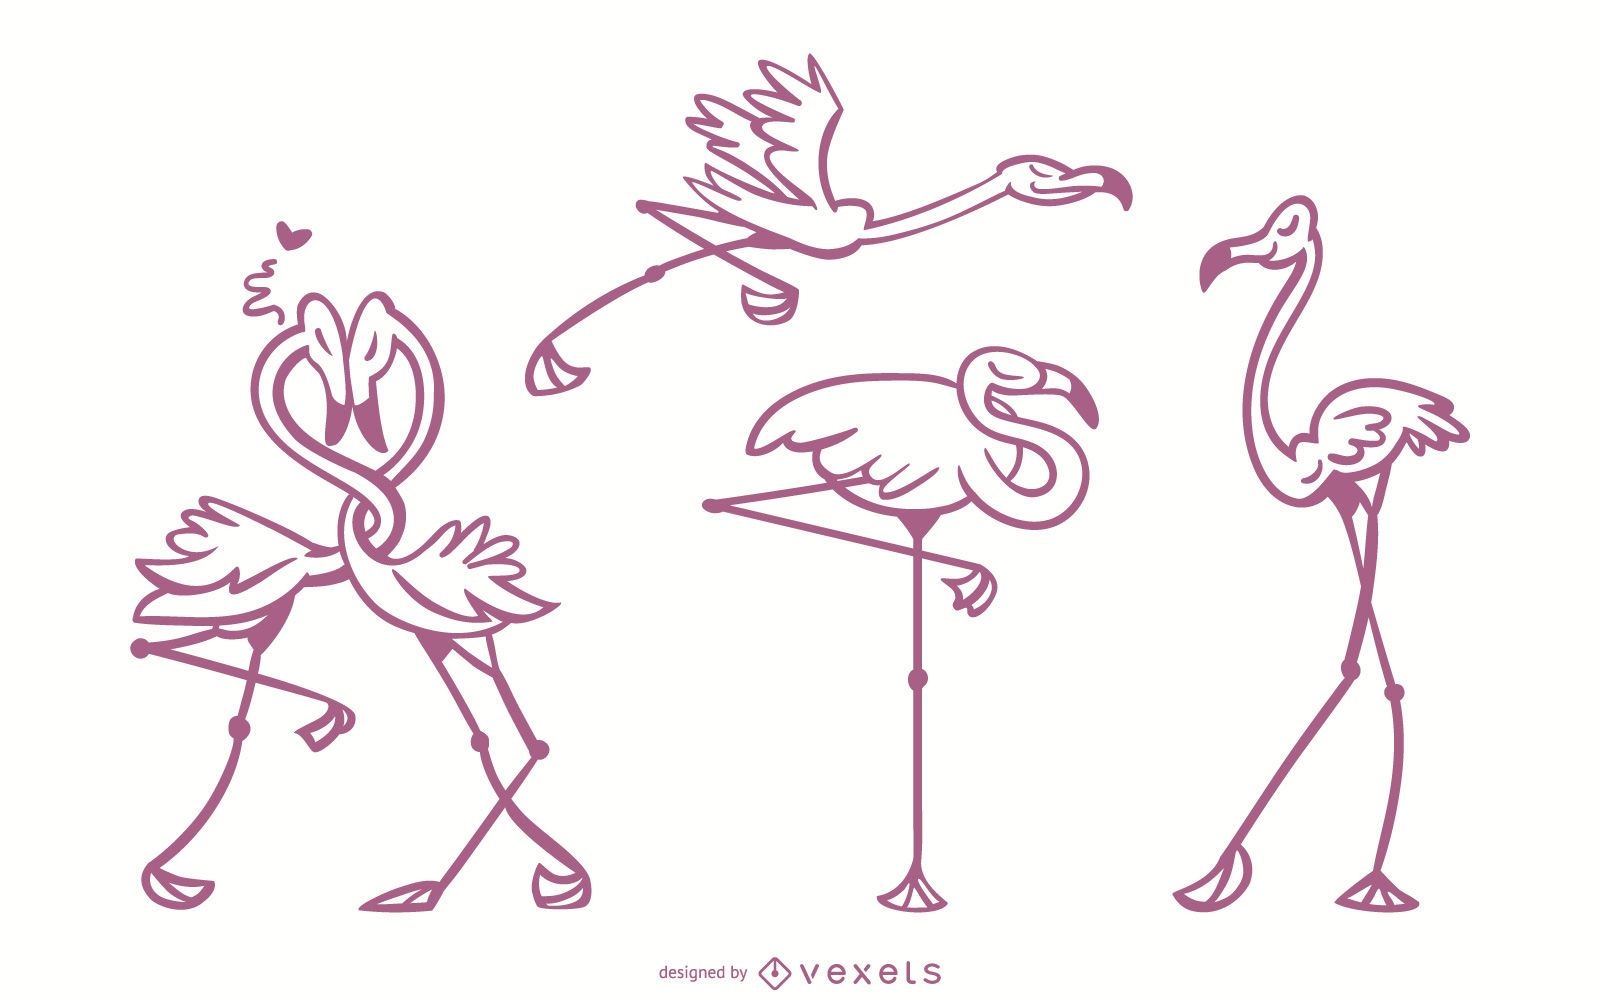 Flamingo elegante conjunto de vectores de trazos